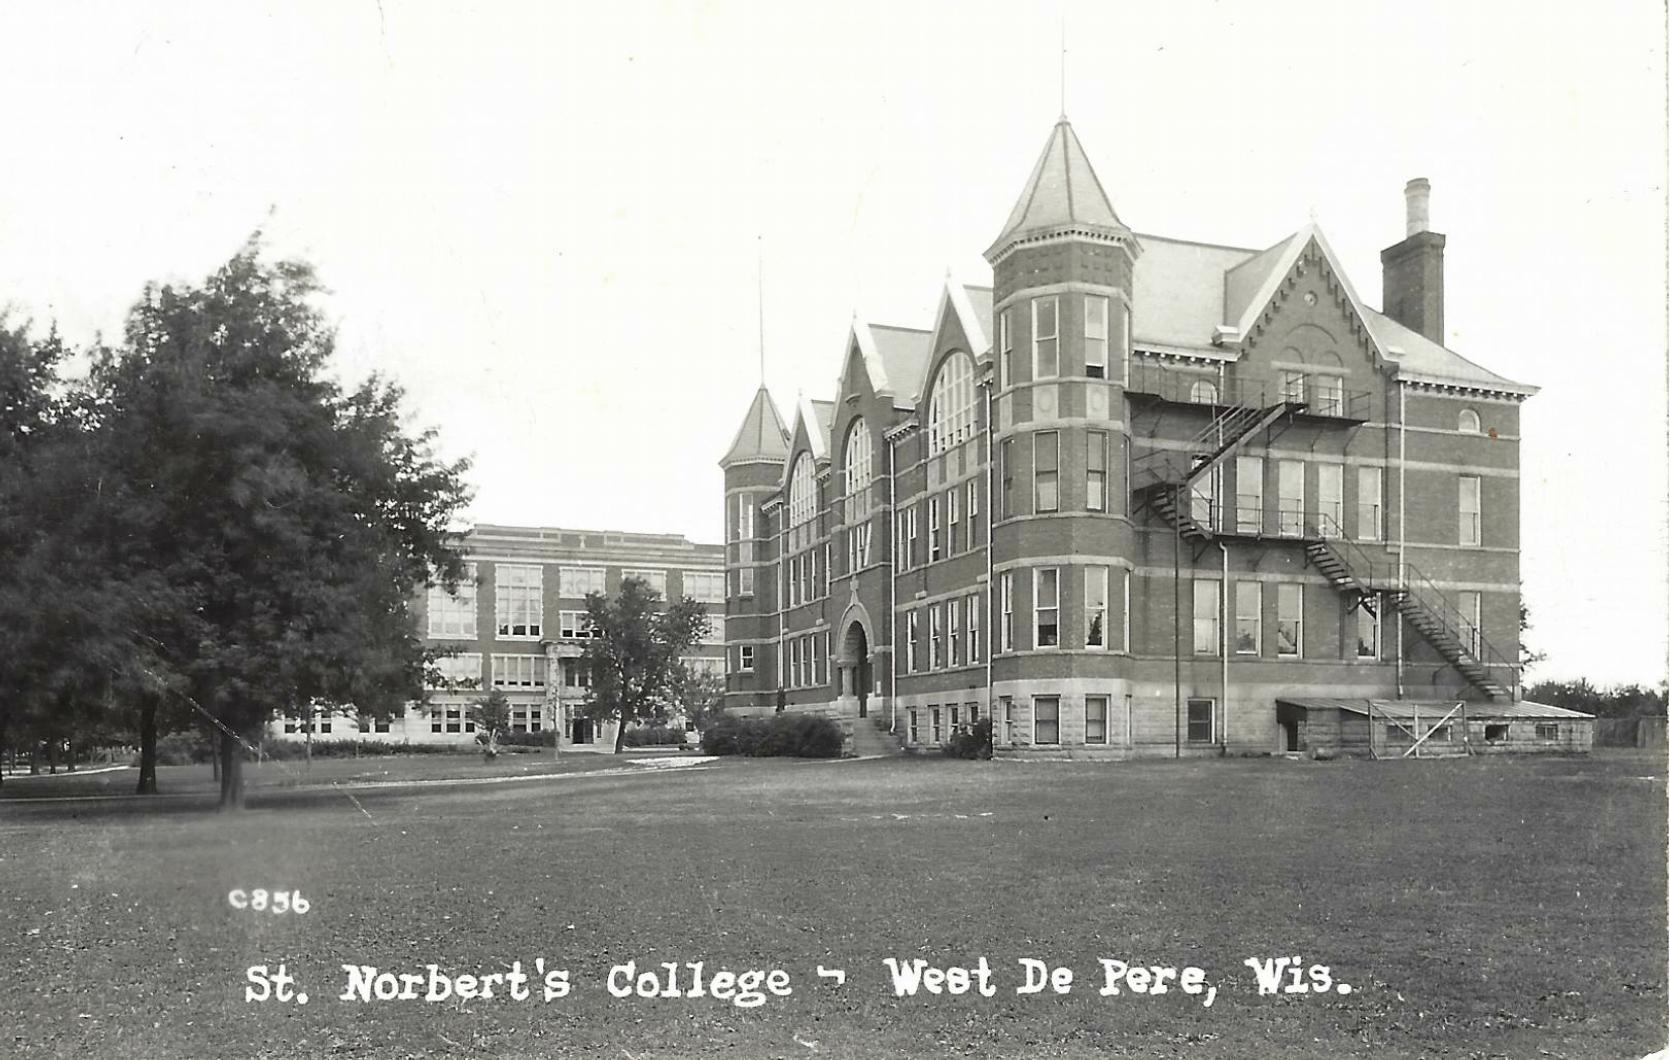 1948 - St. Norbert's College